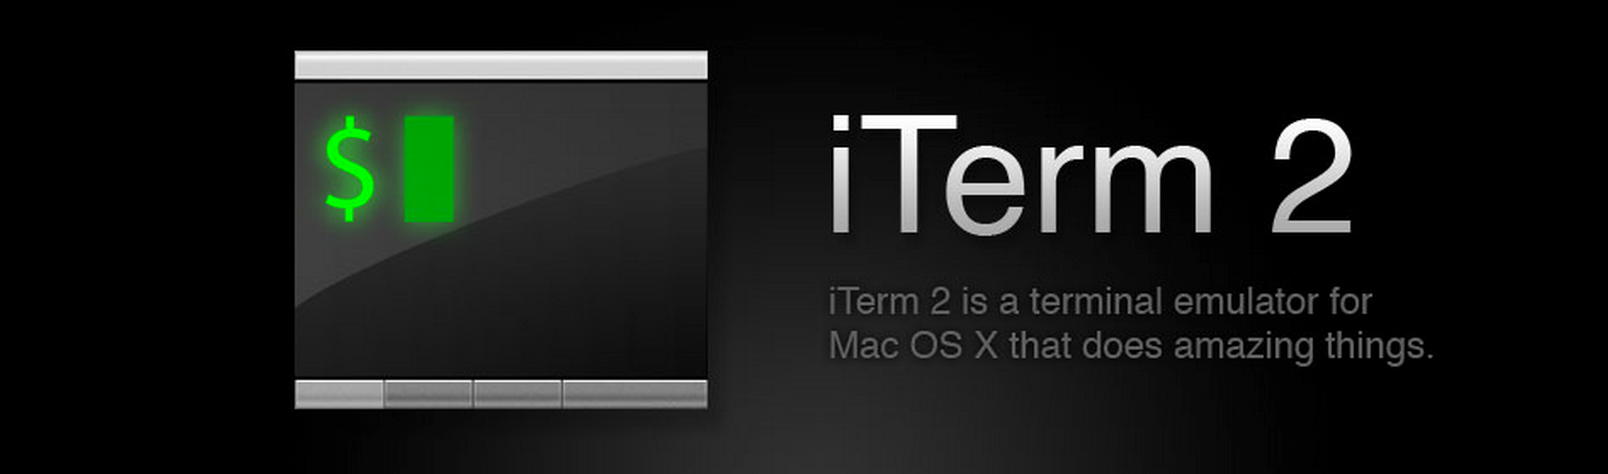 iTerm 2 Mac OS X Download für schnelleres Arbeiten, auch multilingual